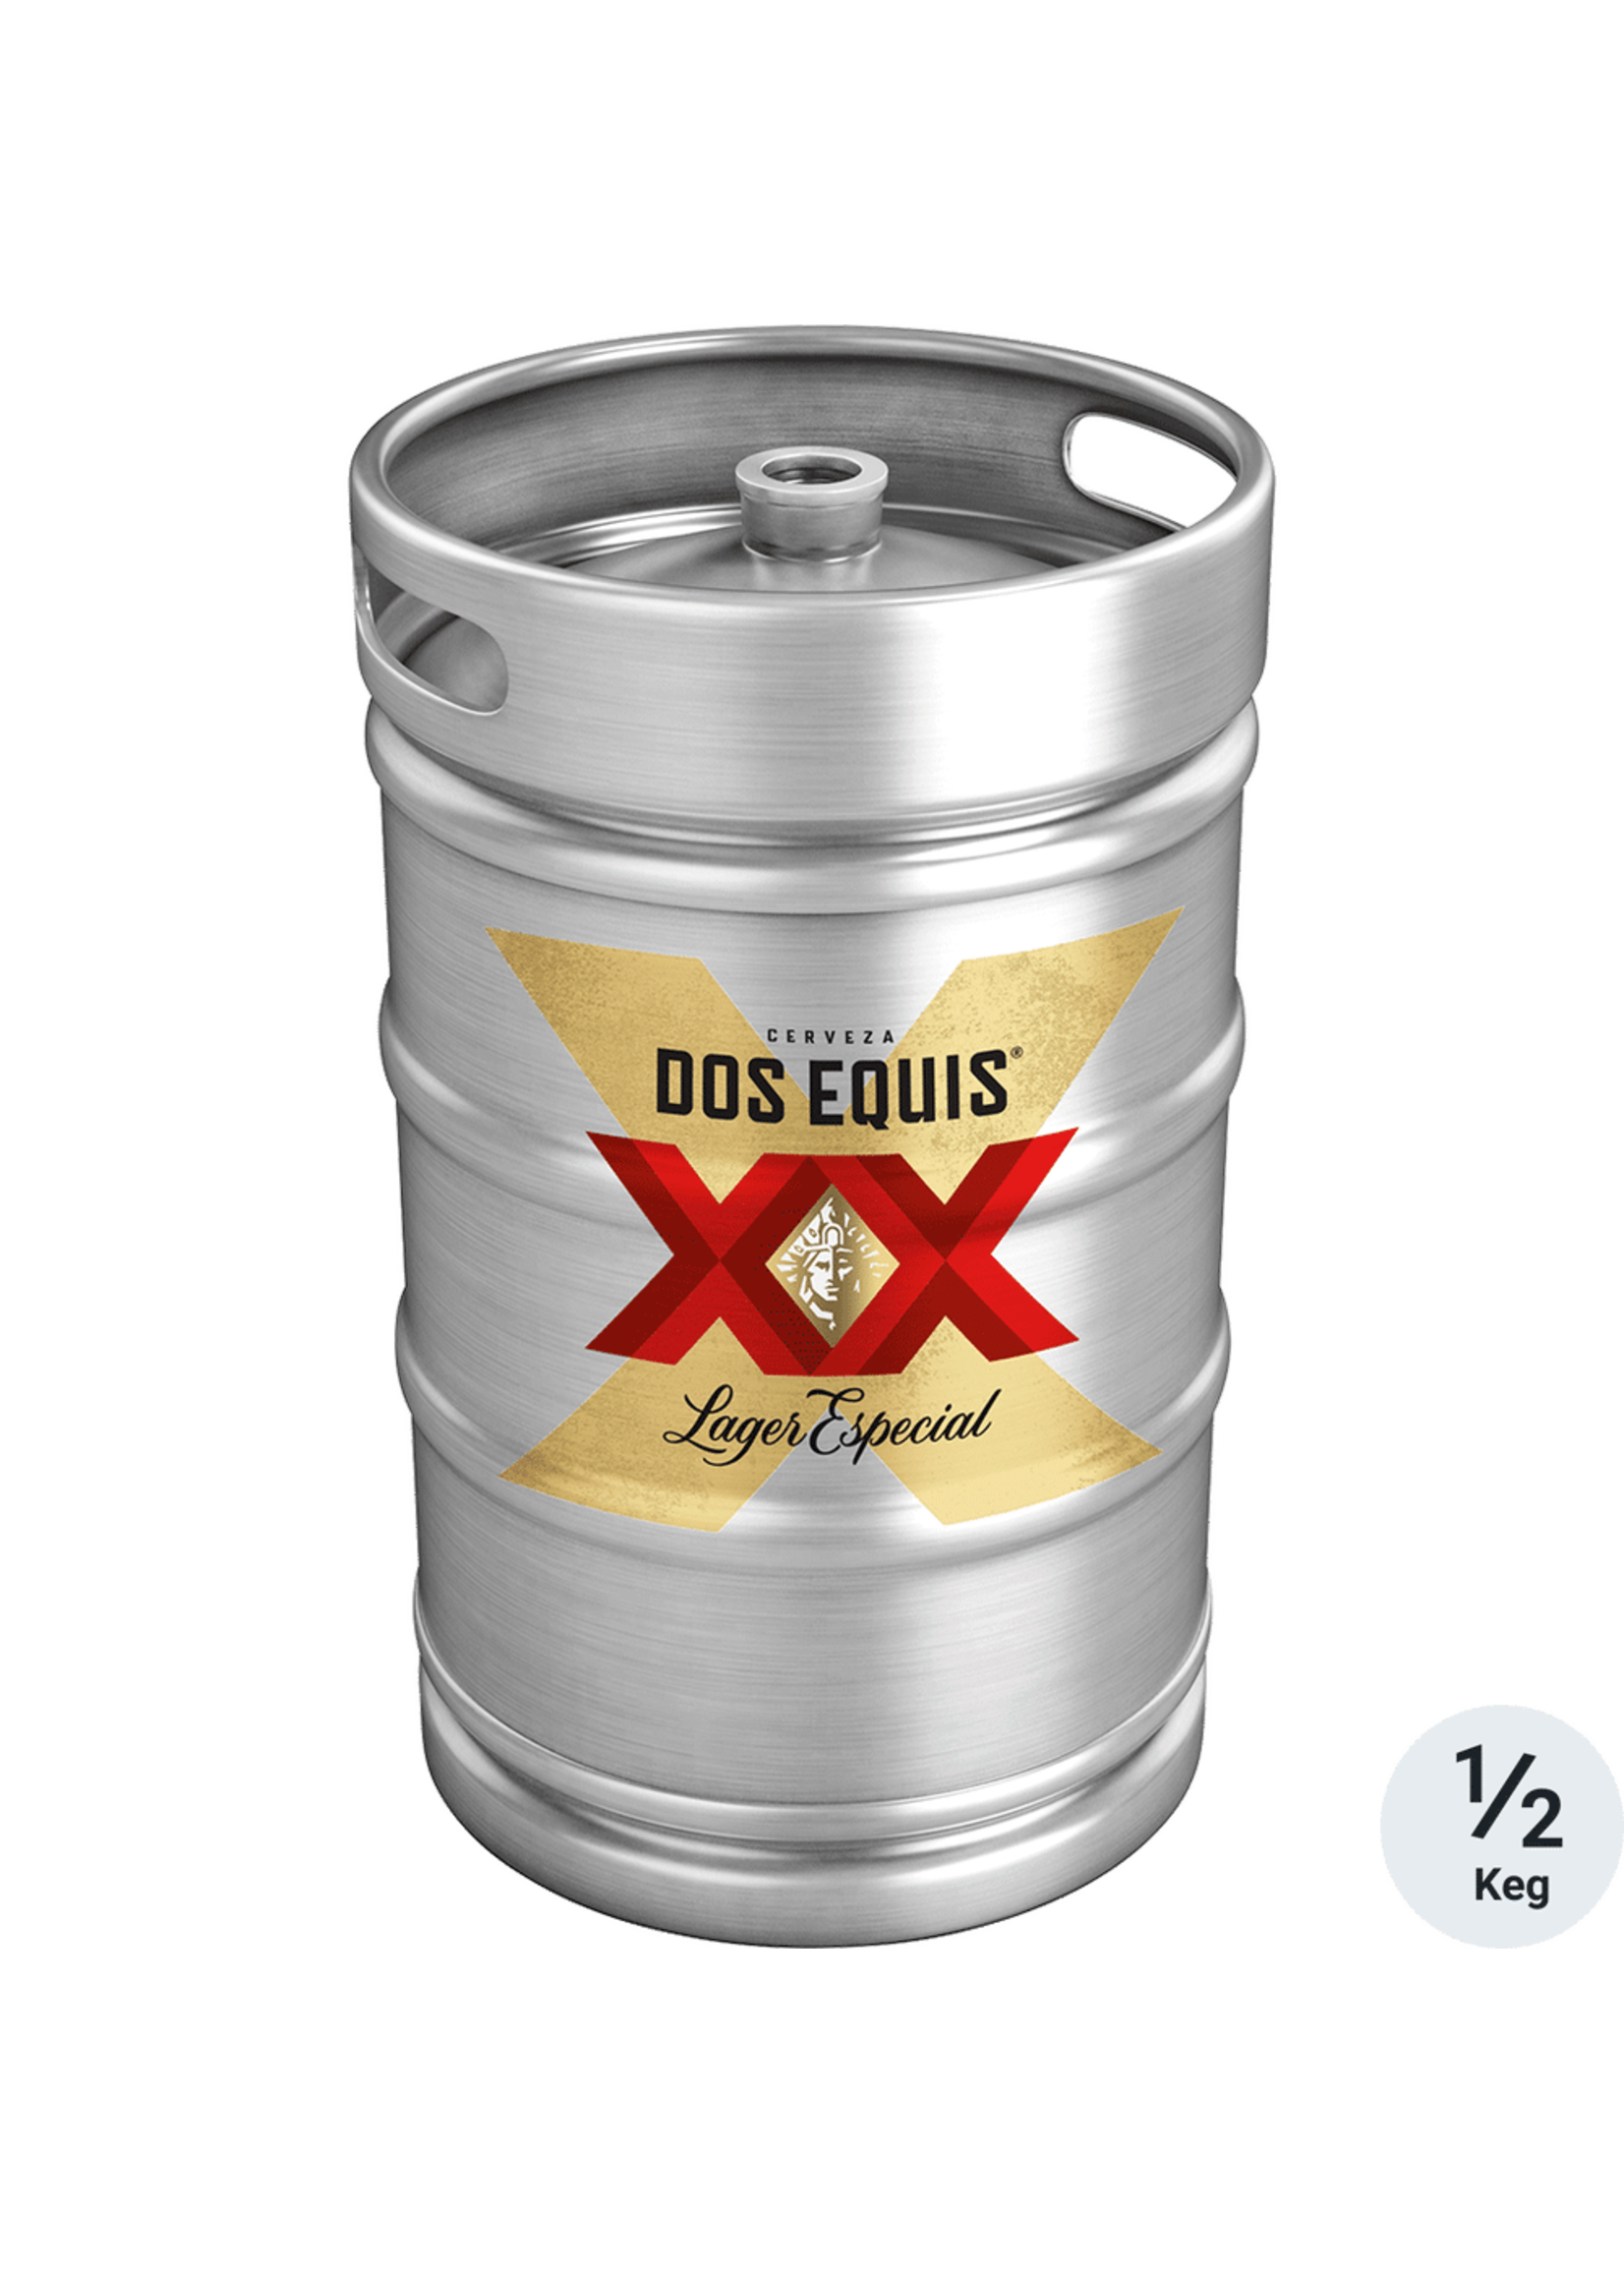 Dos Equis Lager Especial Keg 1/2 (15.5 Gallon)